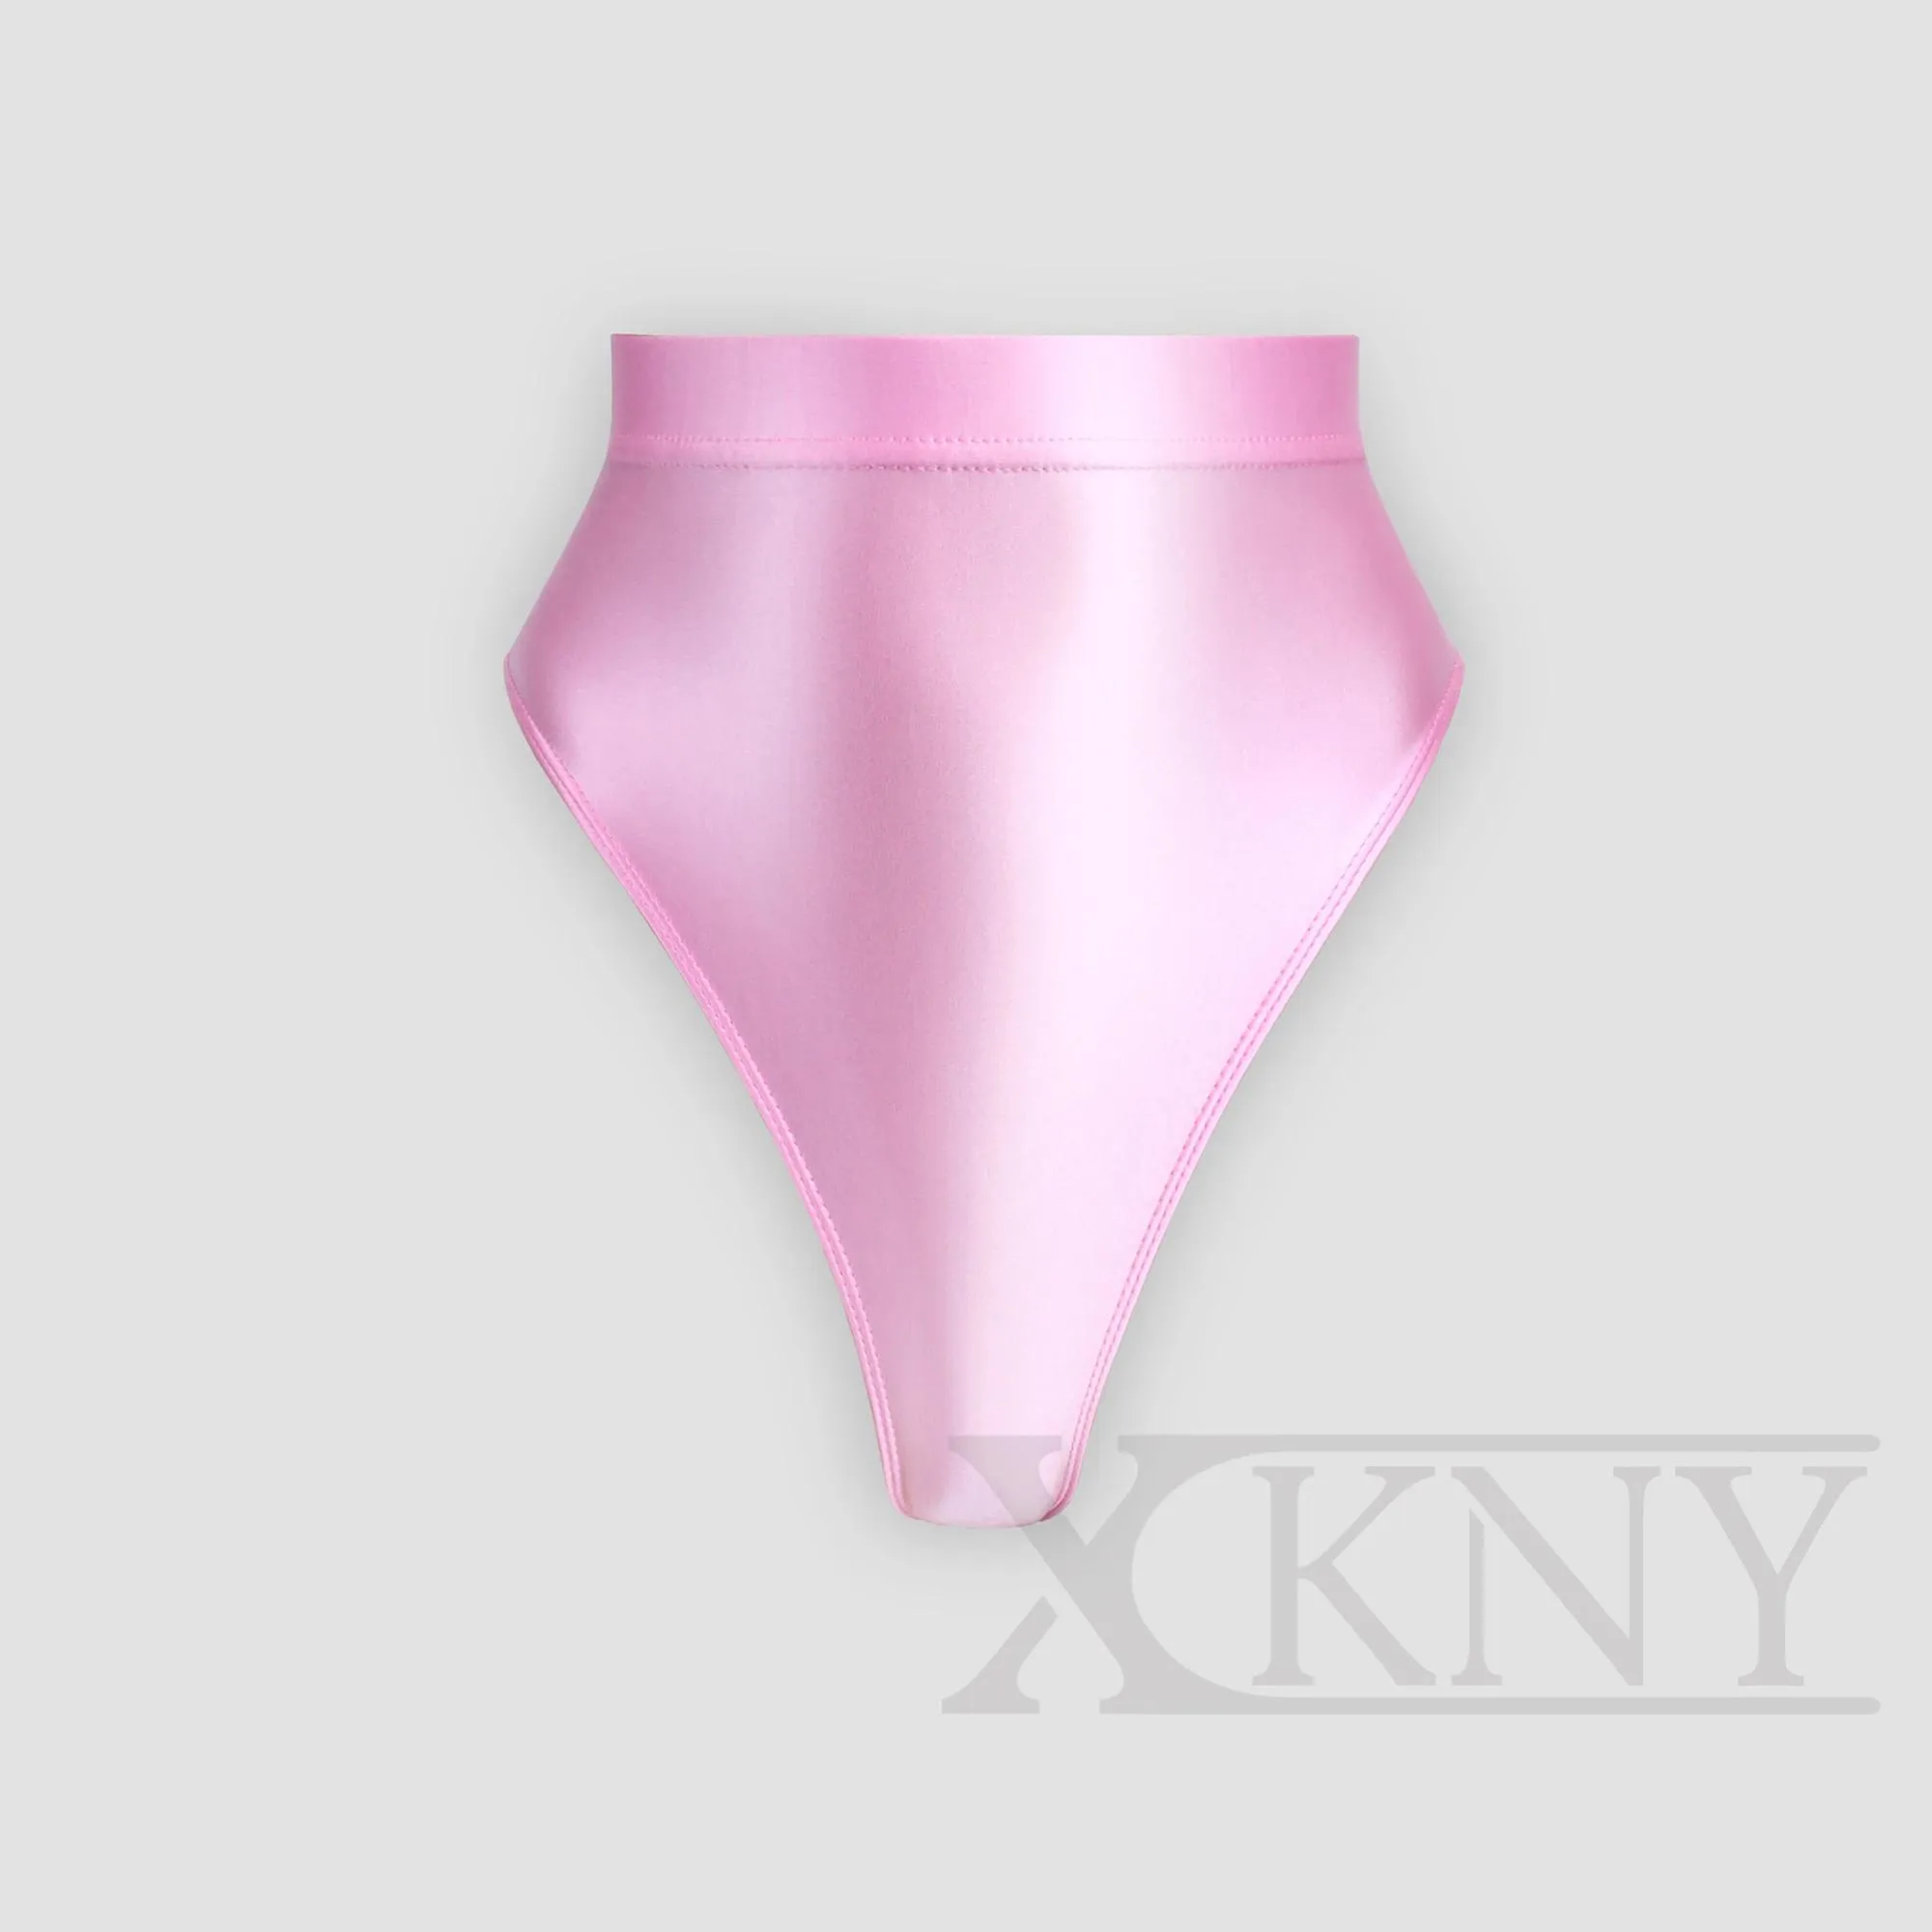 set xckny yeni yağlı parlak şort seksi katı parlak pantolon bikini yüksek bel, seksi tayt dışına giyilebilir parlak spor iç çamaşırları